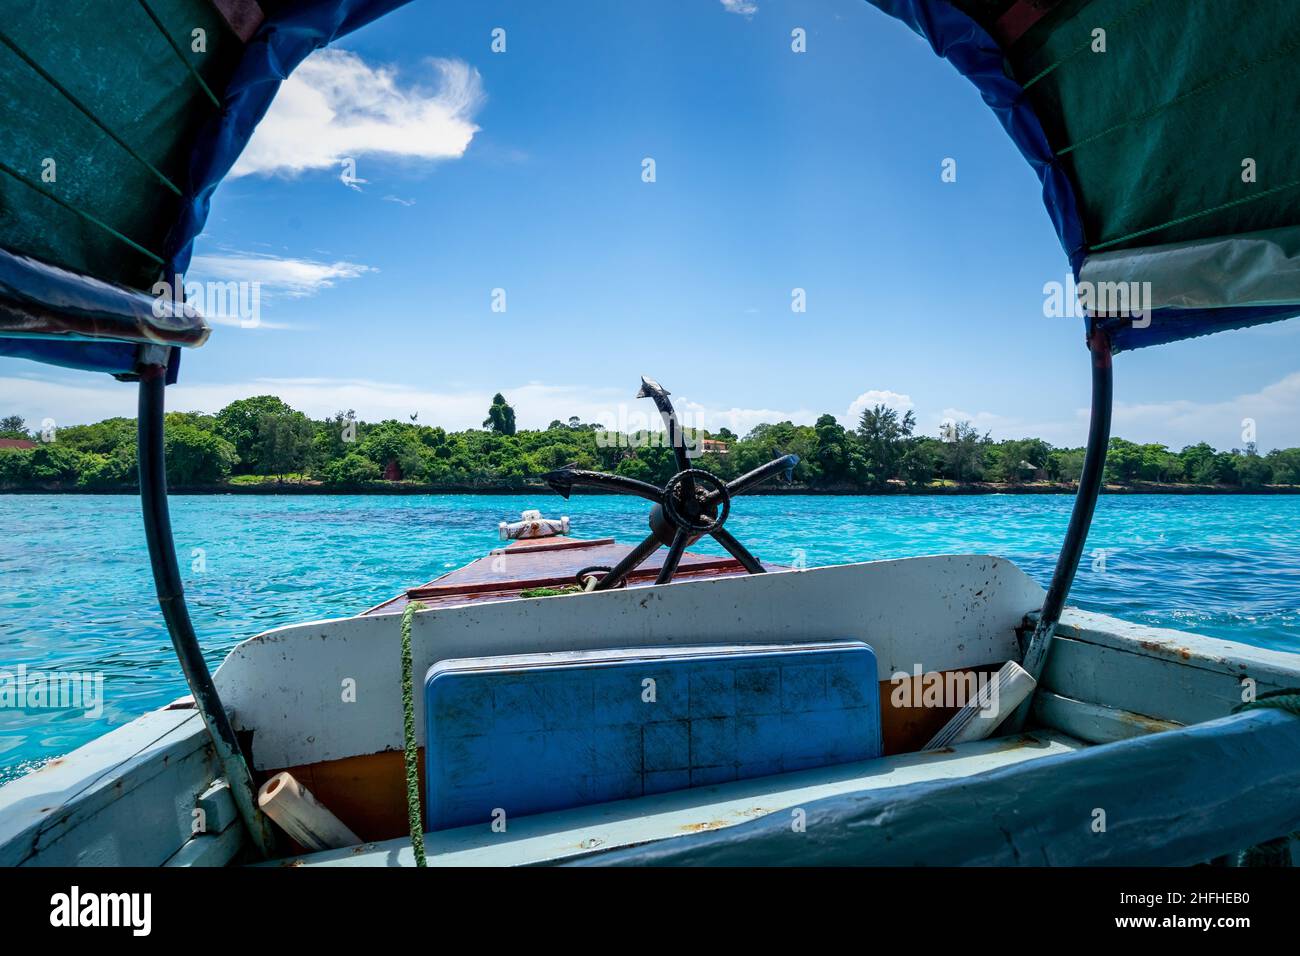 Stagione estiva Zanzibar. All'interno di una barca tradizionale sotto il cielo blu in una strada vicino all'isola della prigione, Stone Town, Unguja, Tanzania. Foto Stock